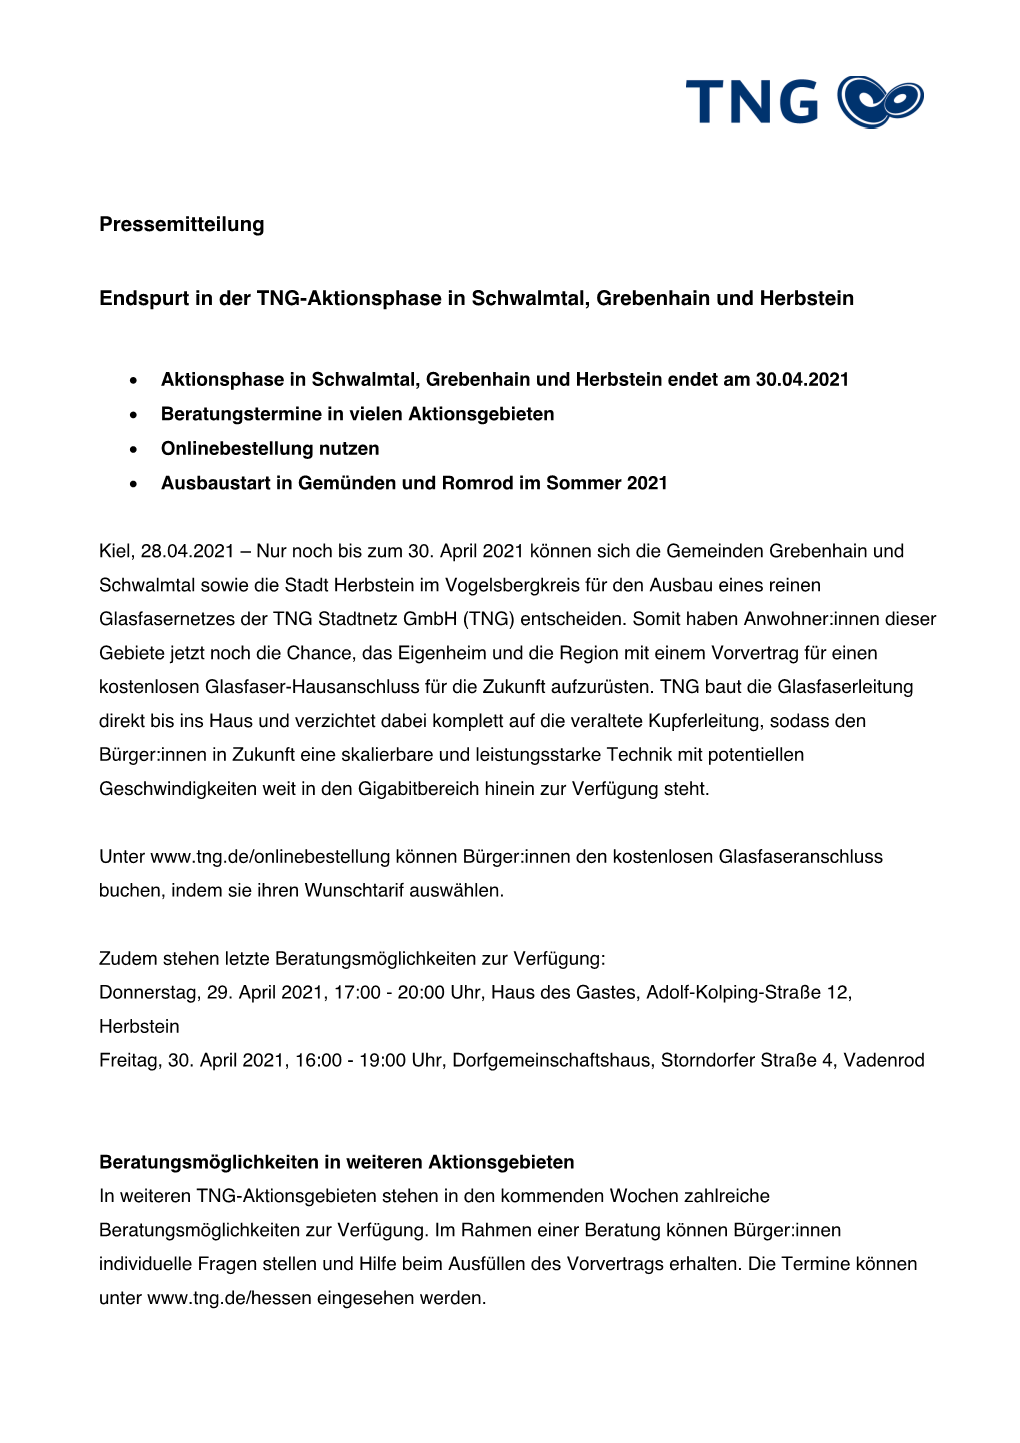 Pressemitteilung Endspurt in Der TNG-Aktionsphase in Schwalmtal